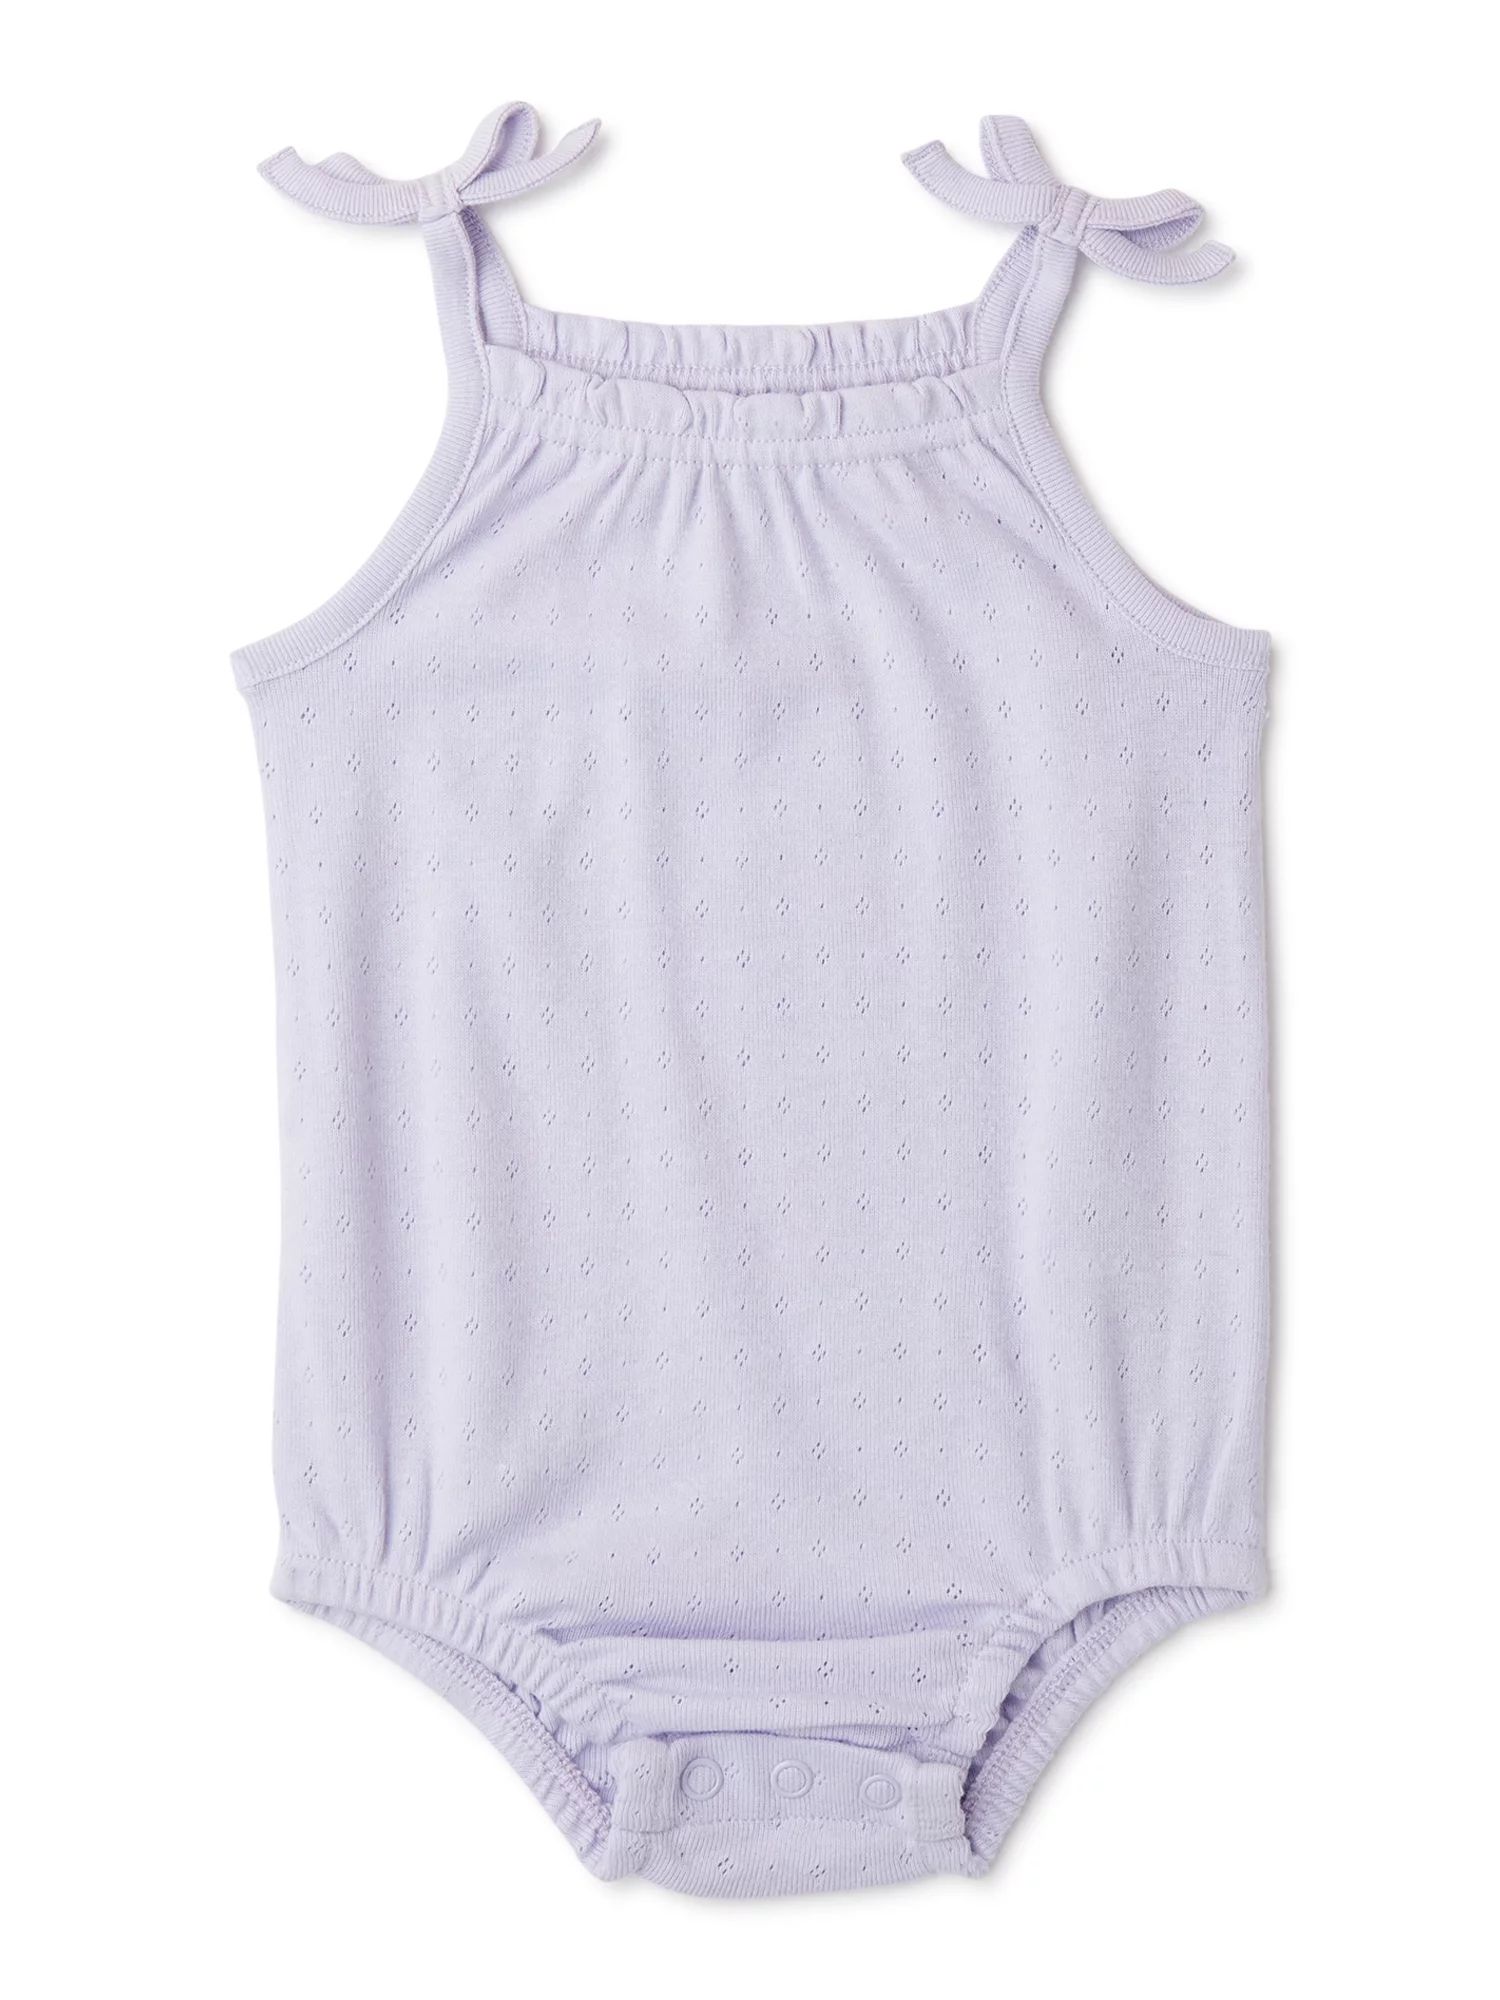 Garanimals Baby Girls Solid Camisole Bodysuit, Sizes 0 Months-24 Months - Walmart.com | Walmart (US)